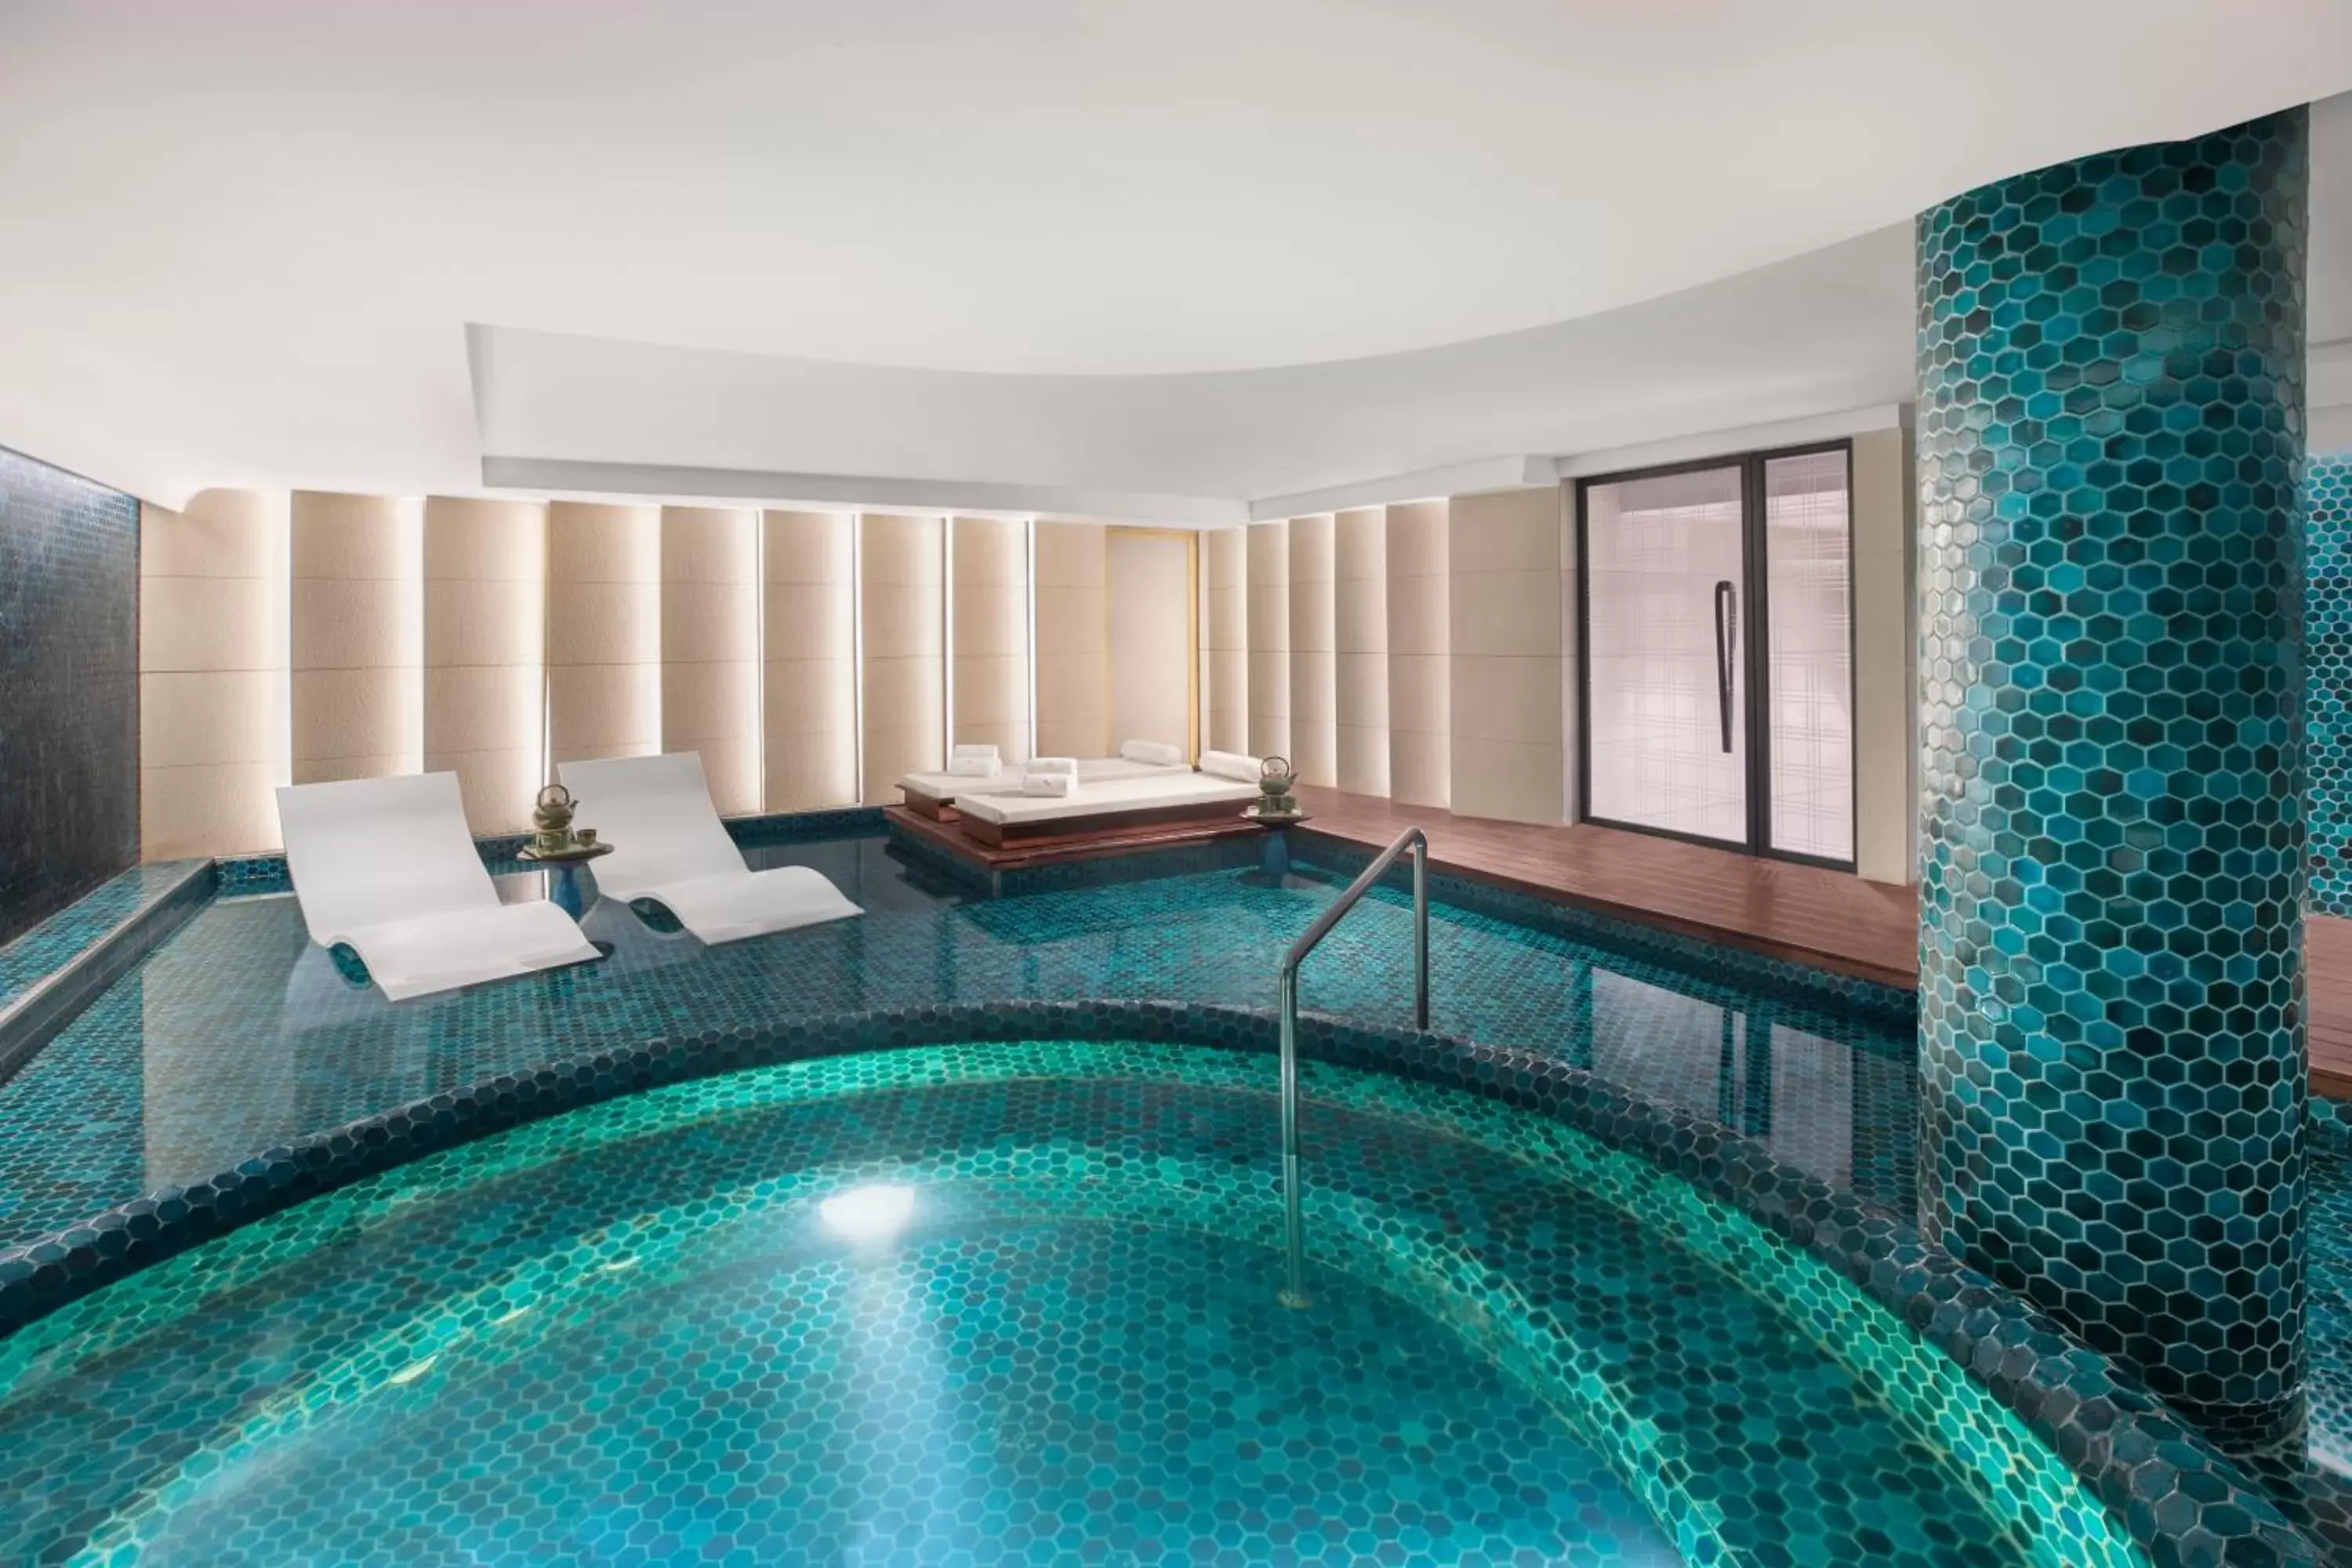 Spa and wellness centre/facilities, Swimming Pool in Taj Exotica Resort & Spa, Goa